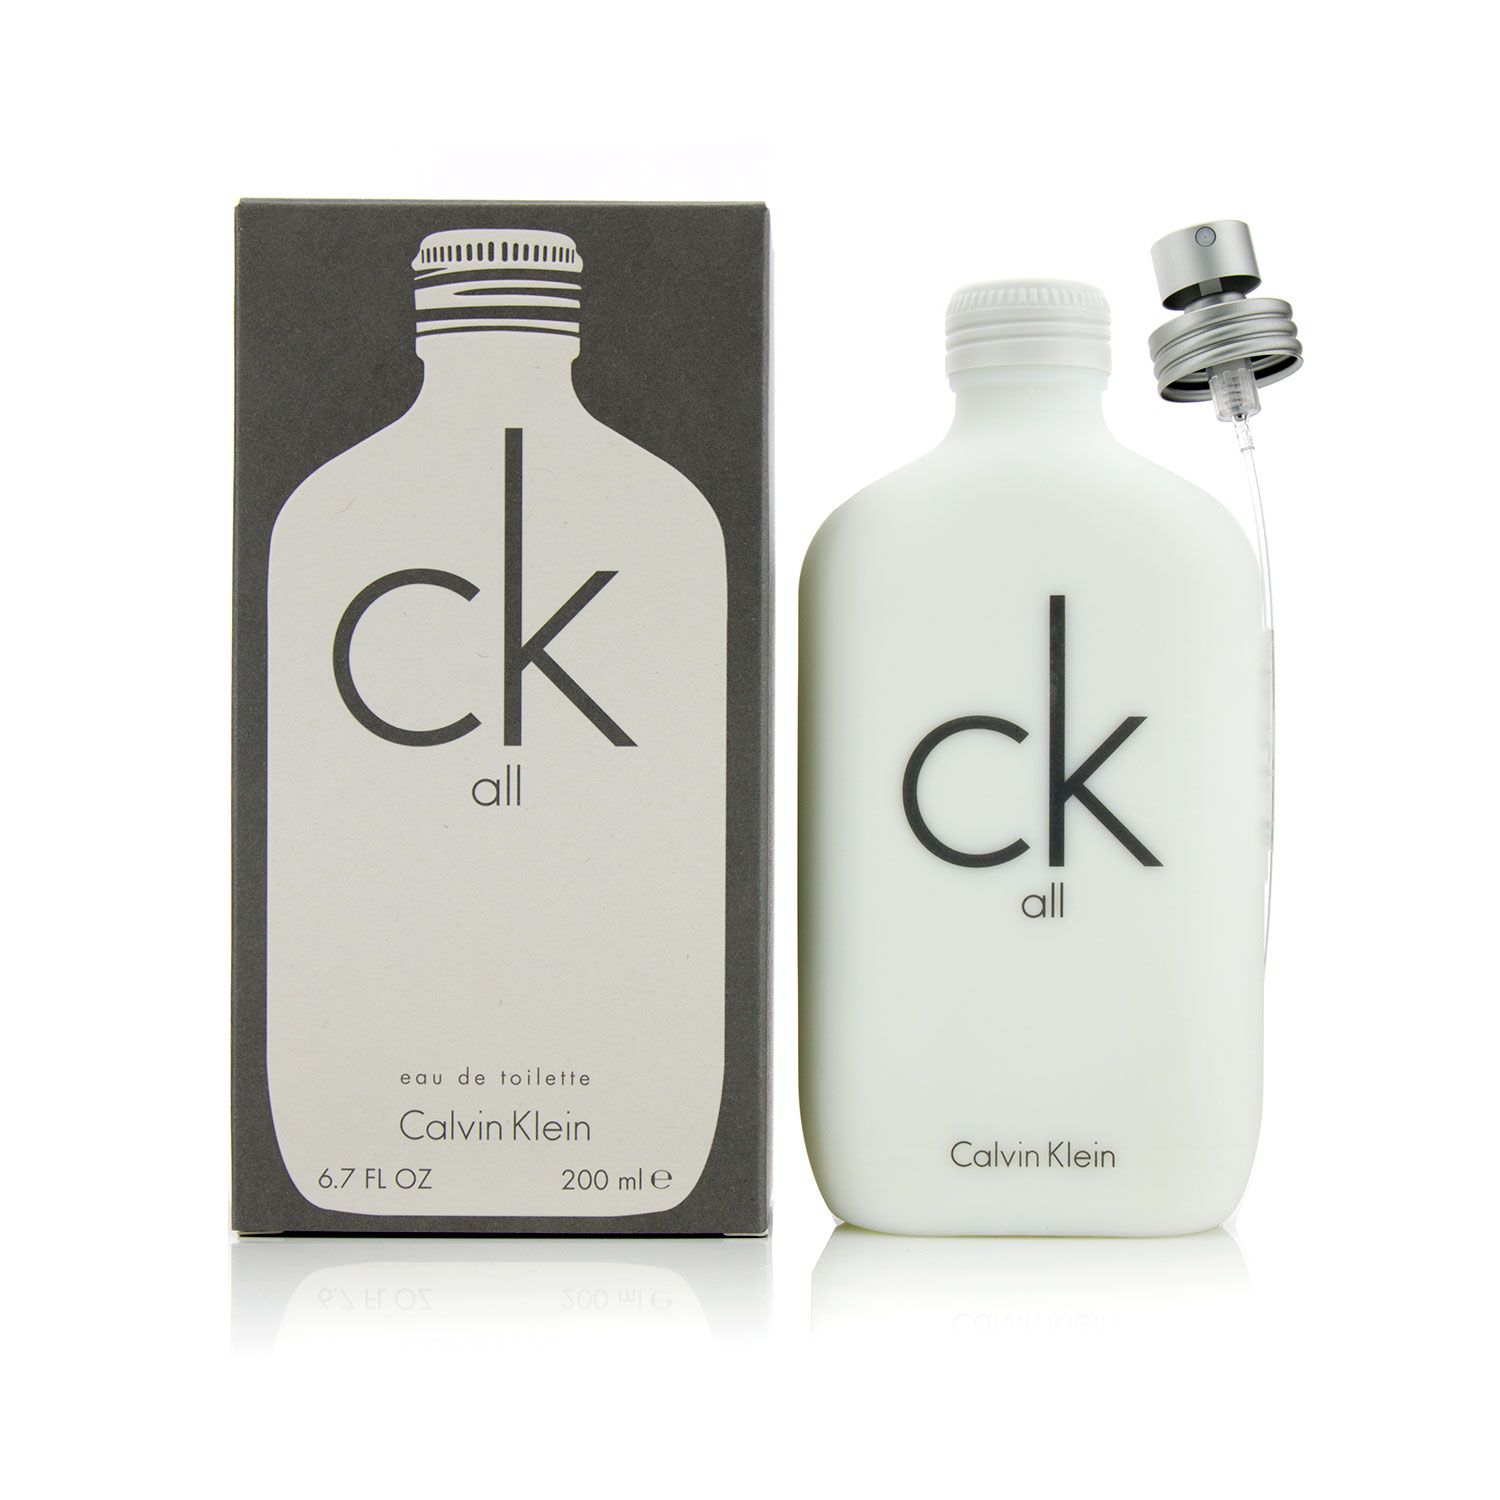 卡文克萊 CK Calvin Klein - CK All 中性淡香水